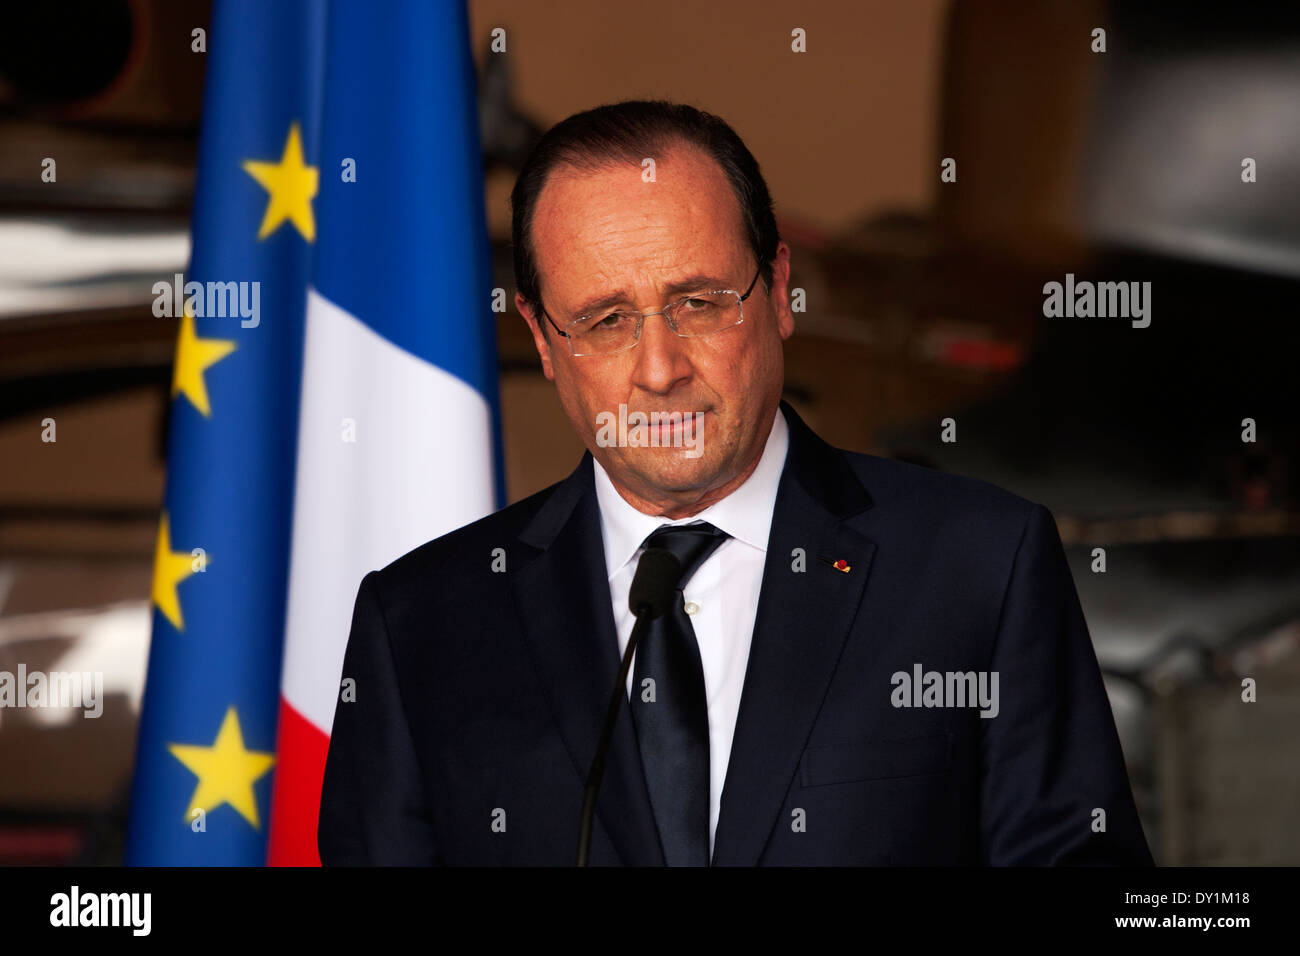 Il Presidente francese Hollande parla e saluta le truppe francesi alla base Mpoko a Bangui, Repubblica Centrale Africana Foto Stock